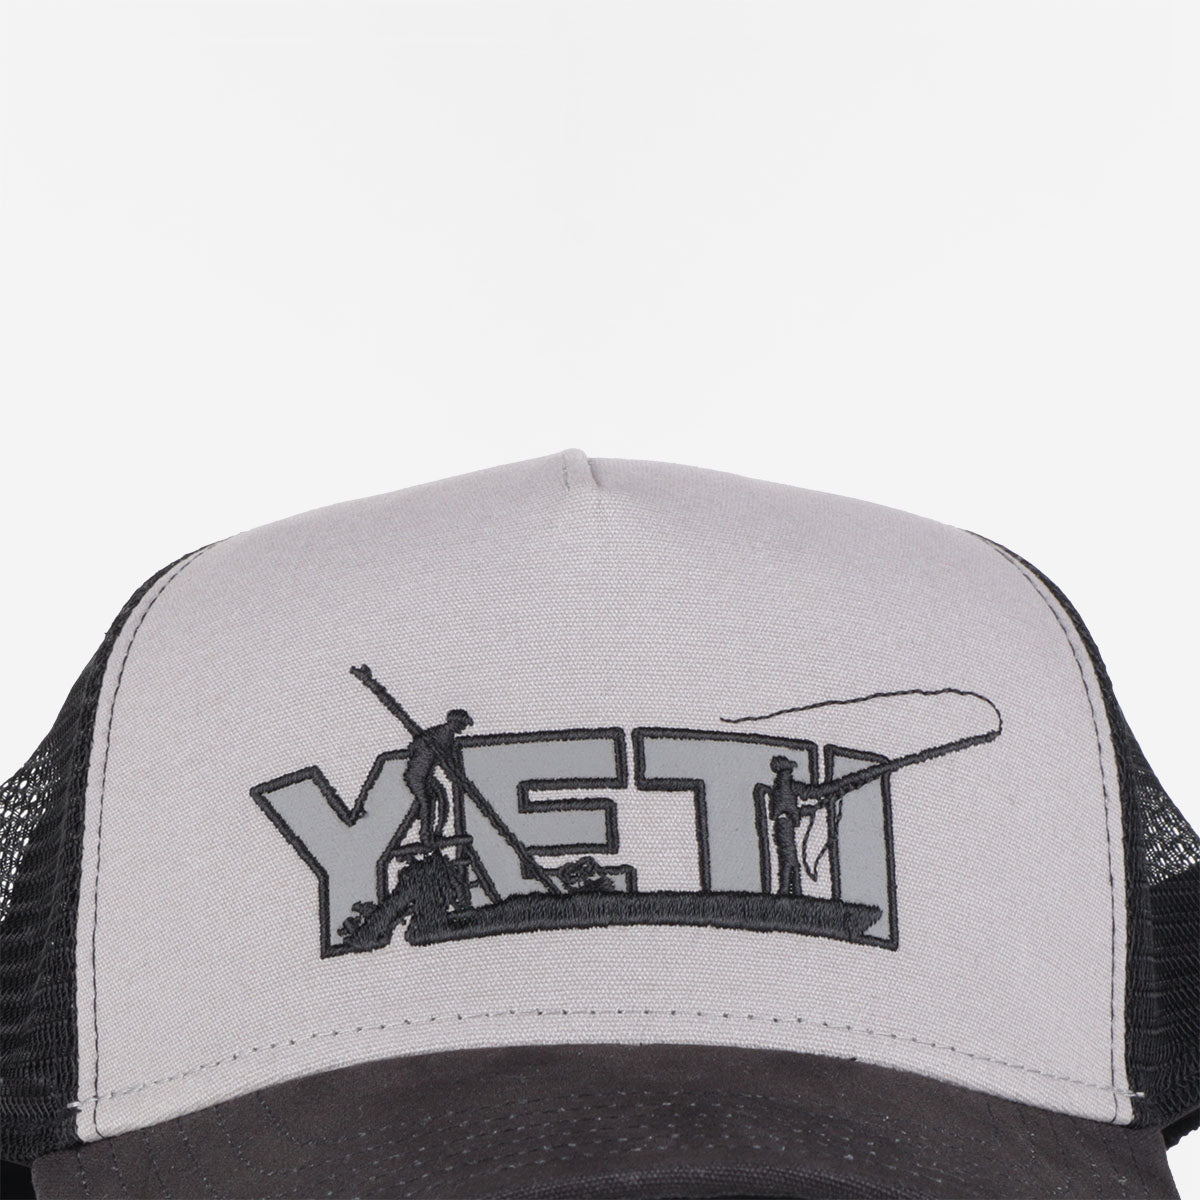 YETI Skiff Trucker Hat, Black Grey, Detail Shot 2